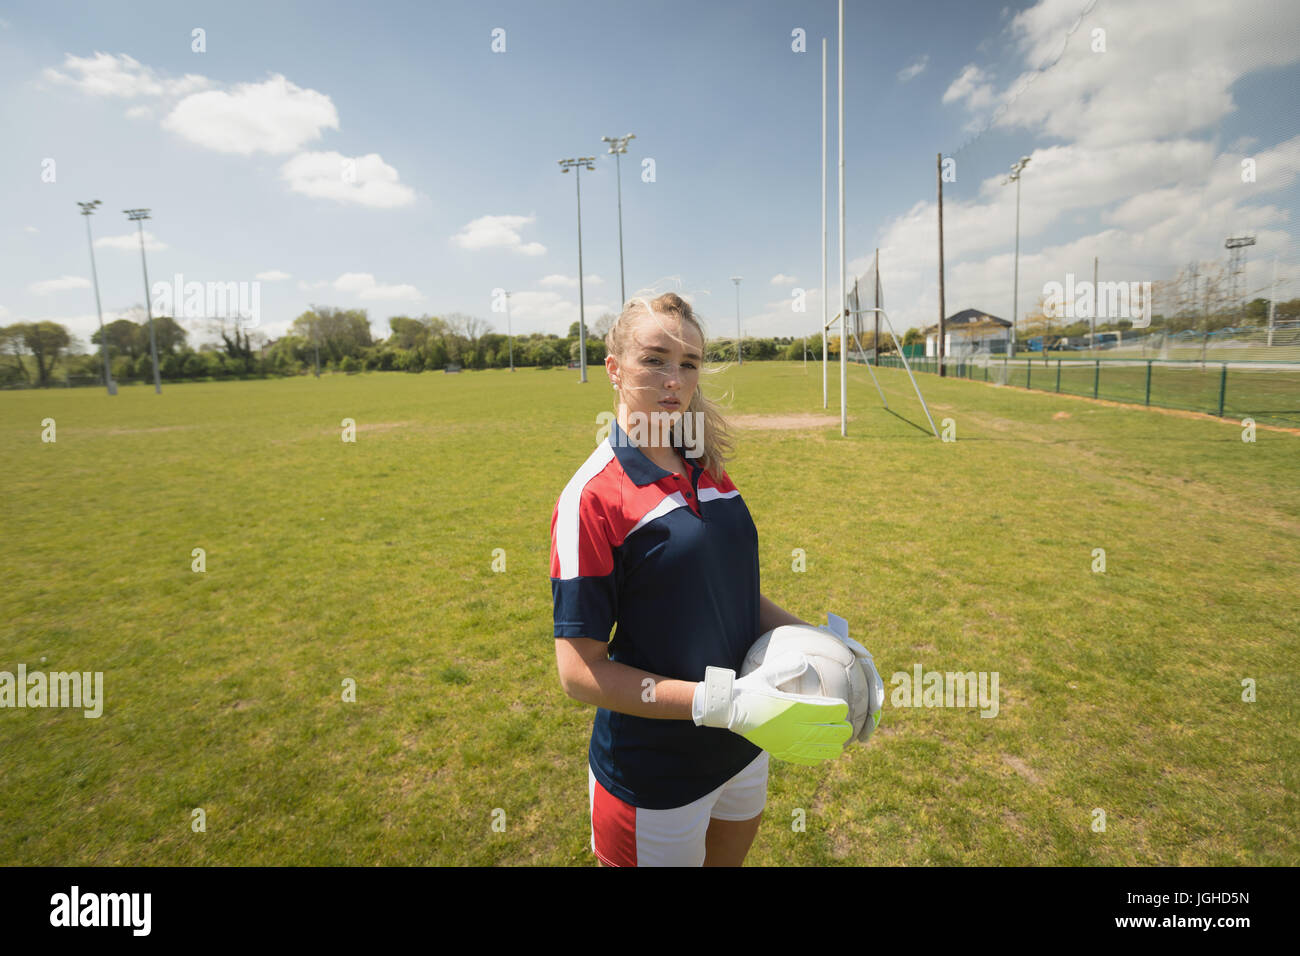 Junge weibliche Torwart Feld gegen Himmel Fußball beim stehen festhalten Stockfoto